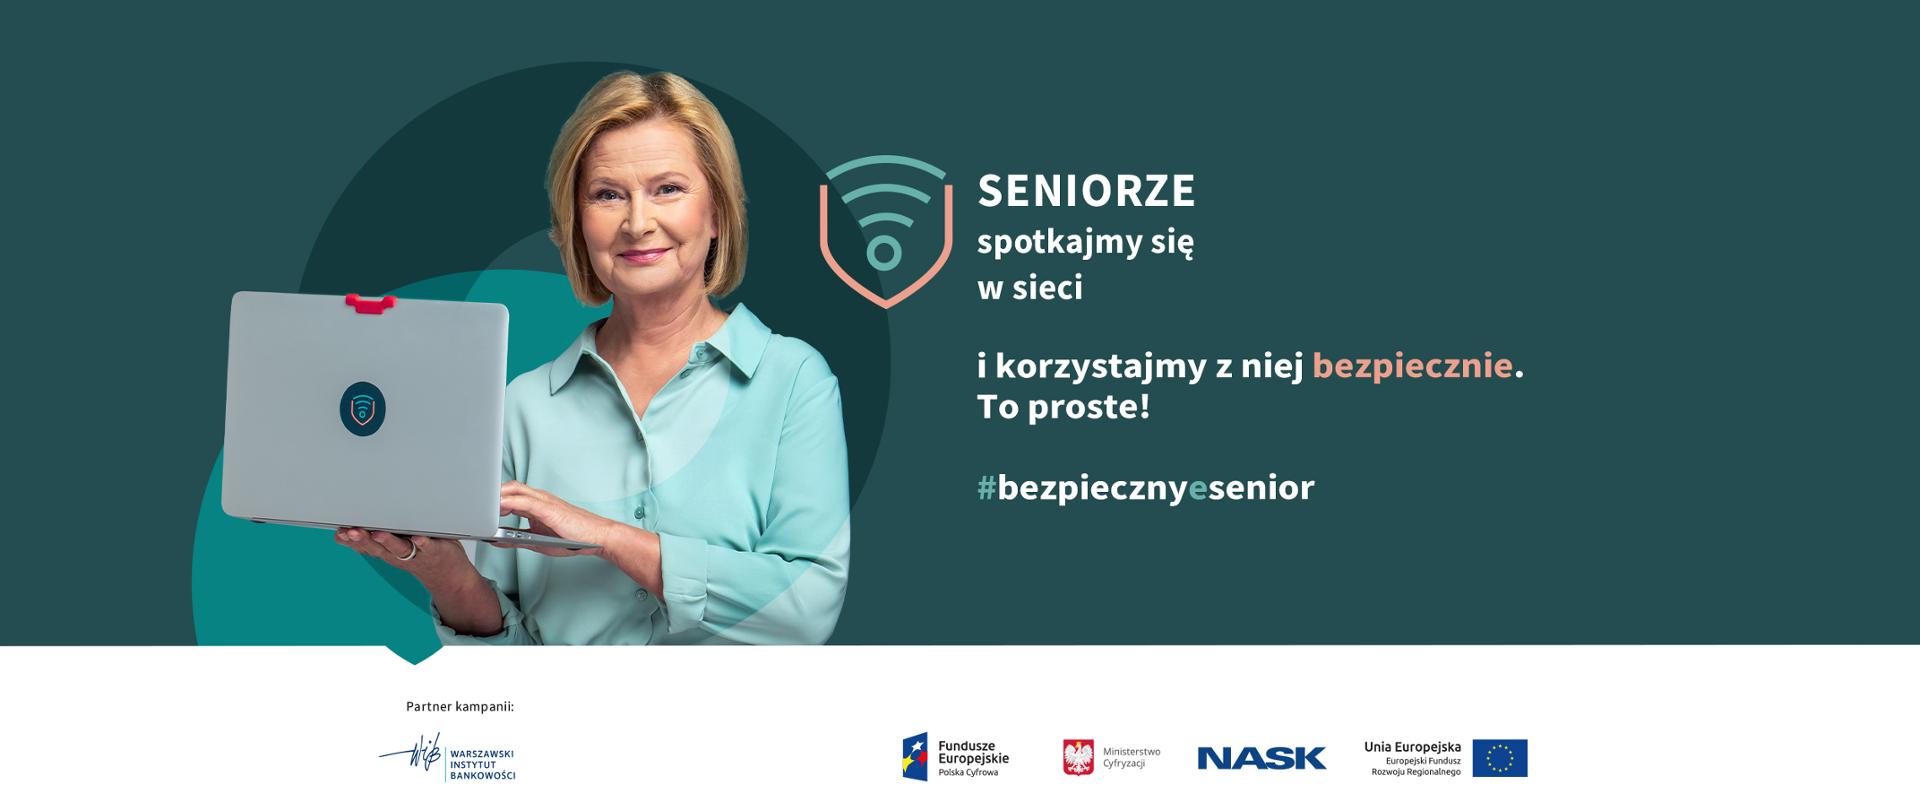 Ambasadorka kampanii Barbara Bursztynowicz z laptopem. Obok tekst: Seniorze, spotkajmy się w sieci i korzystajmy z niej bezpiecznie. To proste! #bezpiecznyesenior